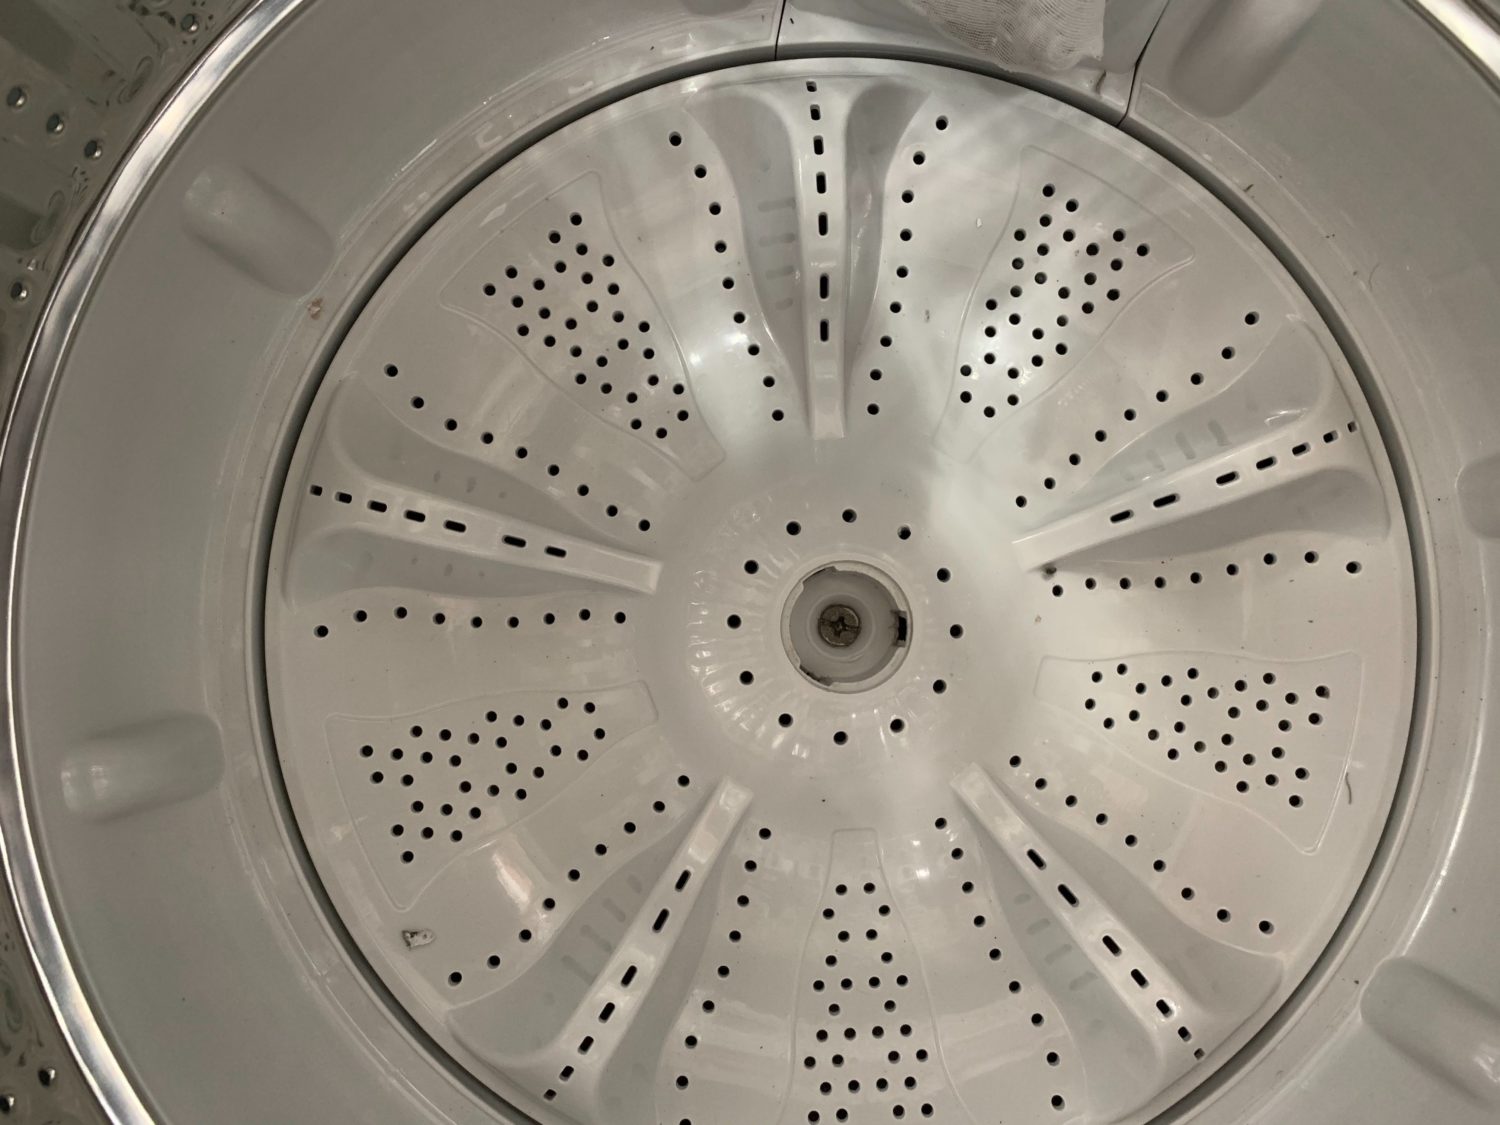 ハイアール 5.5kg 洗濯機 JW-C55Aの分解と洗濯槽の掃除方法